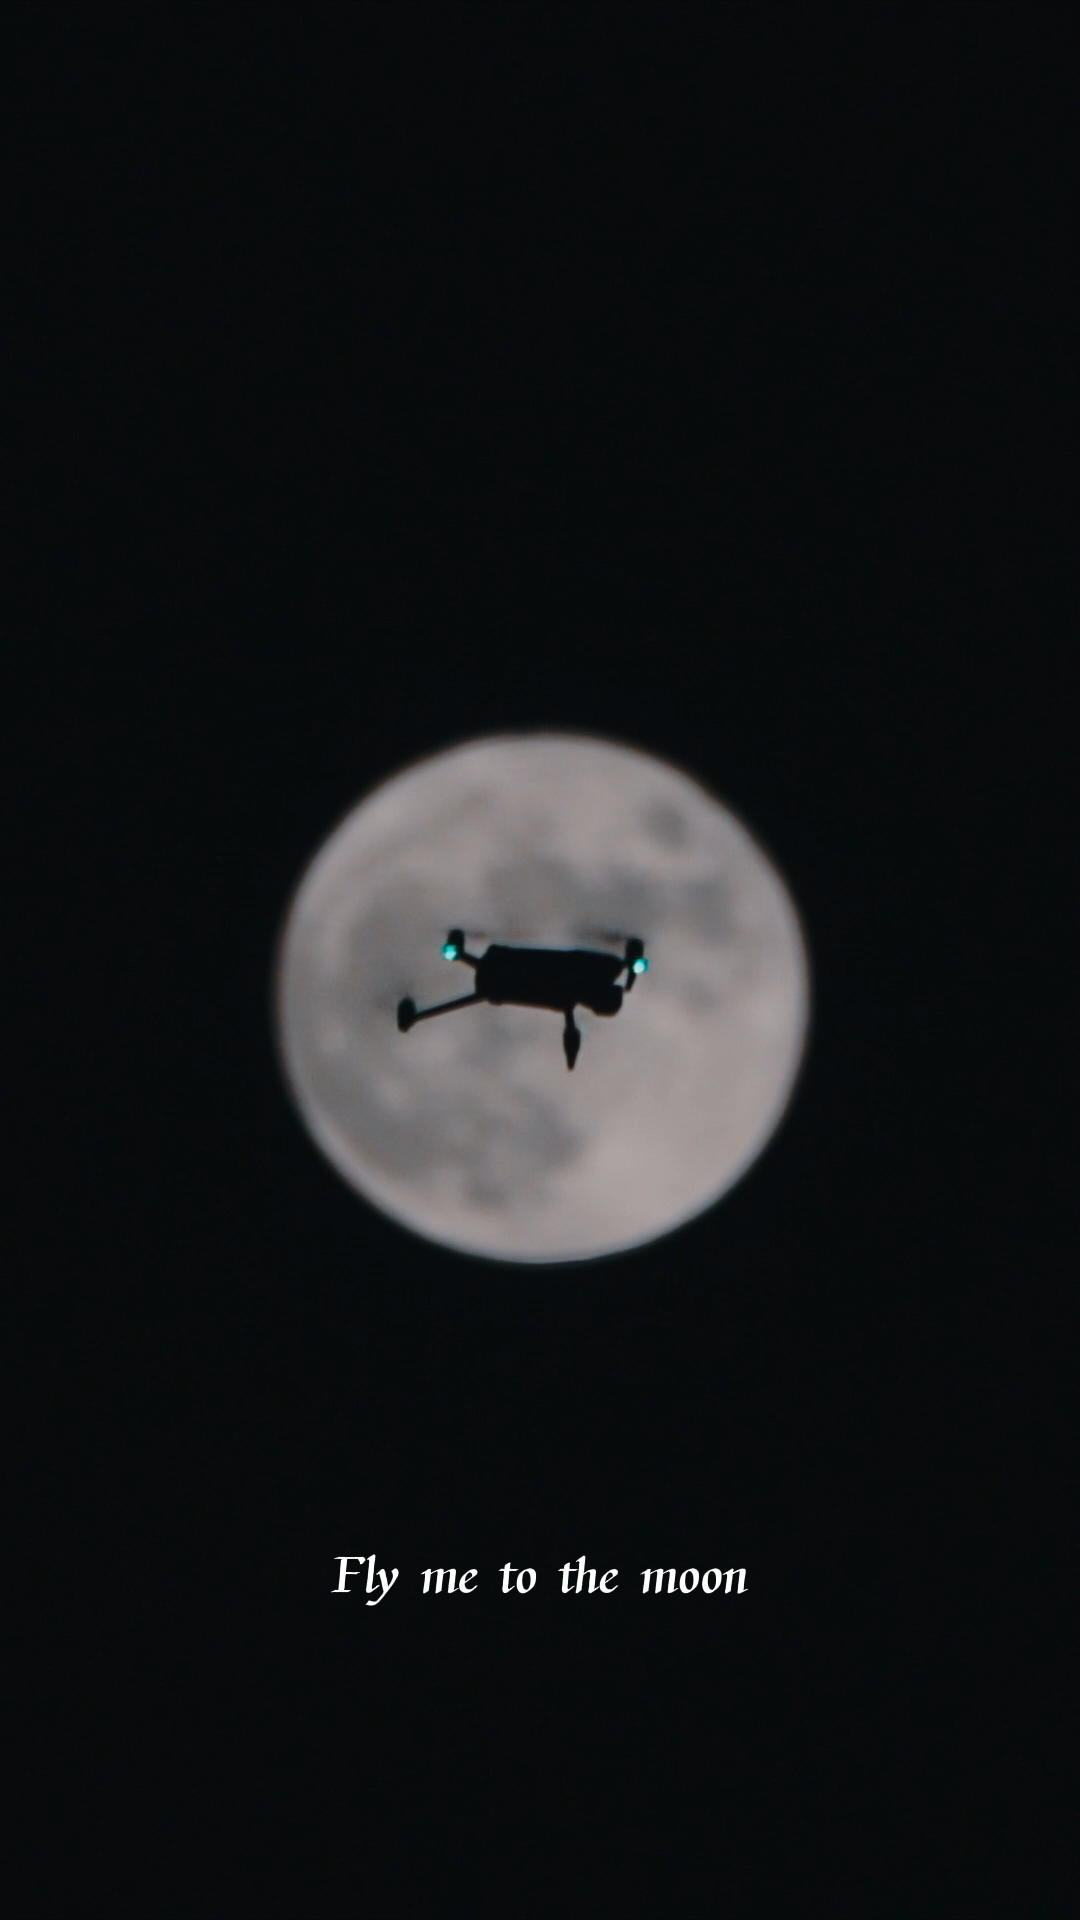 满月与无人机 Portrait 中秋明月 此时可掇-0001.png